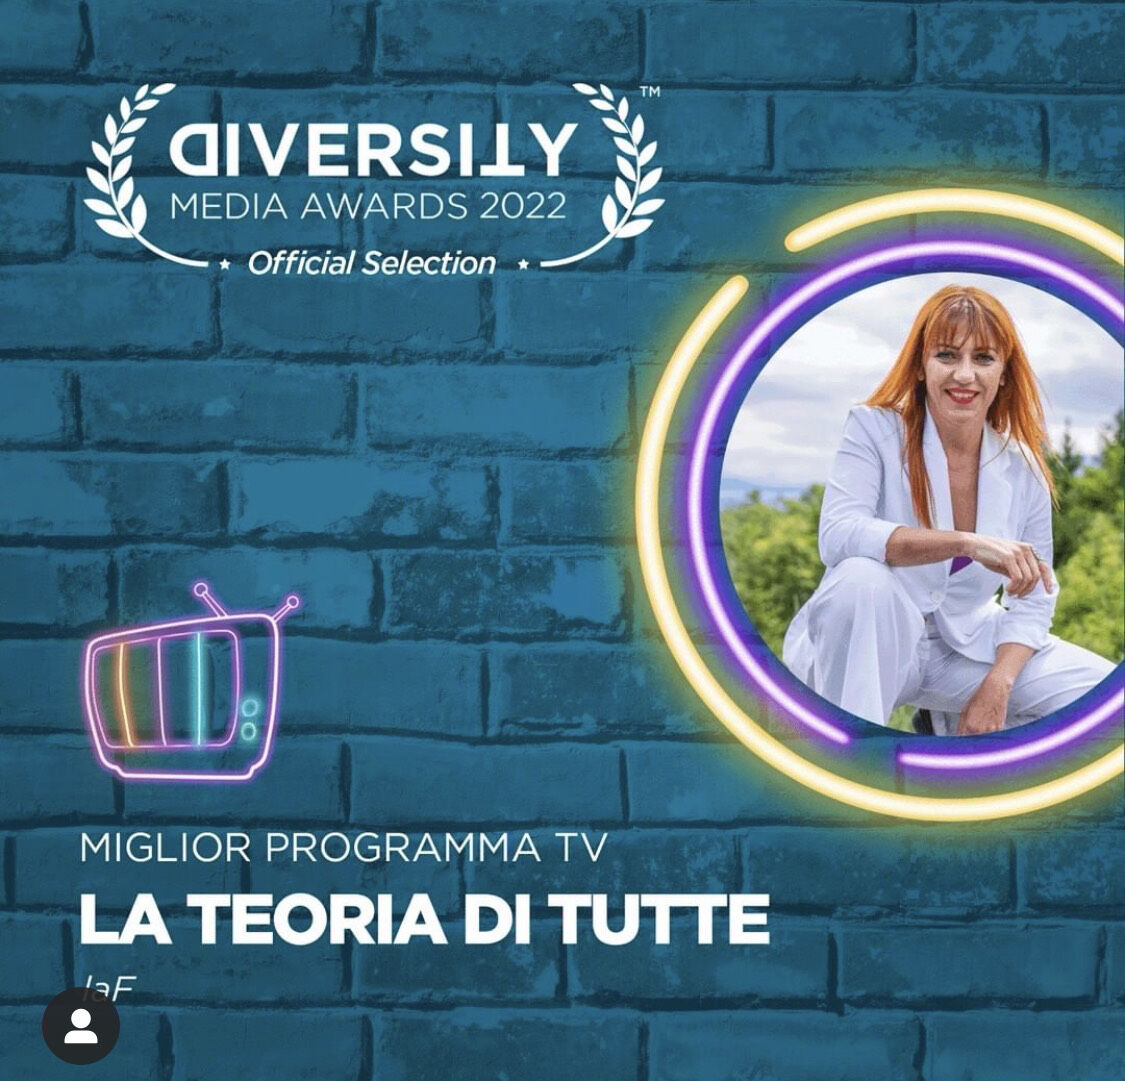 Sono in finale ai ‘Diversity Award 2022’ per la categoria ‘miglior programma tv’ con “LA TEORIA DI TUTTE” …c’è da votare il vincitore, lo fate anche voi?